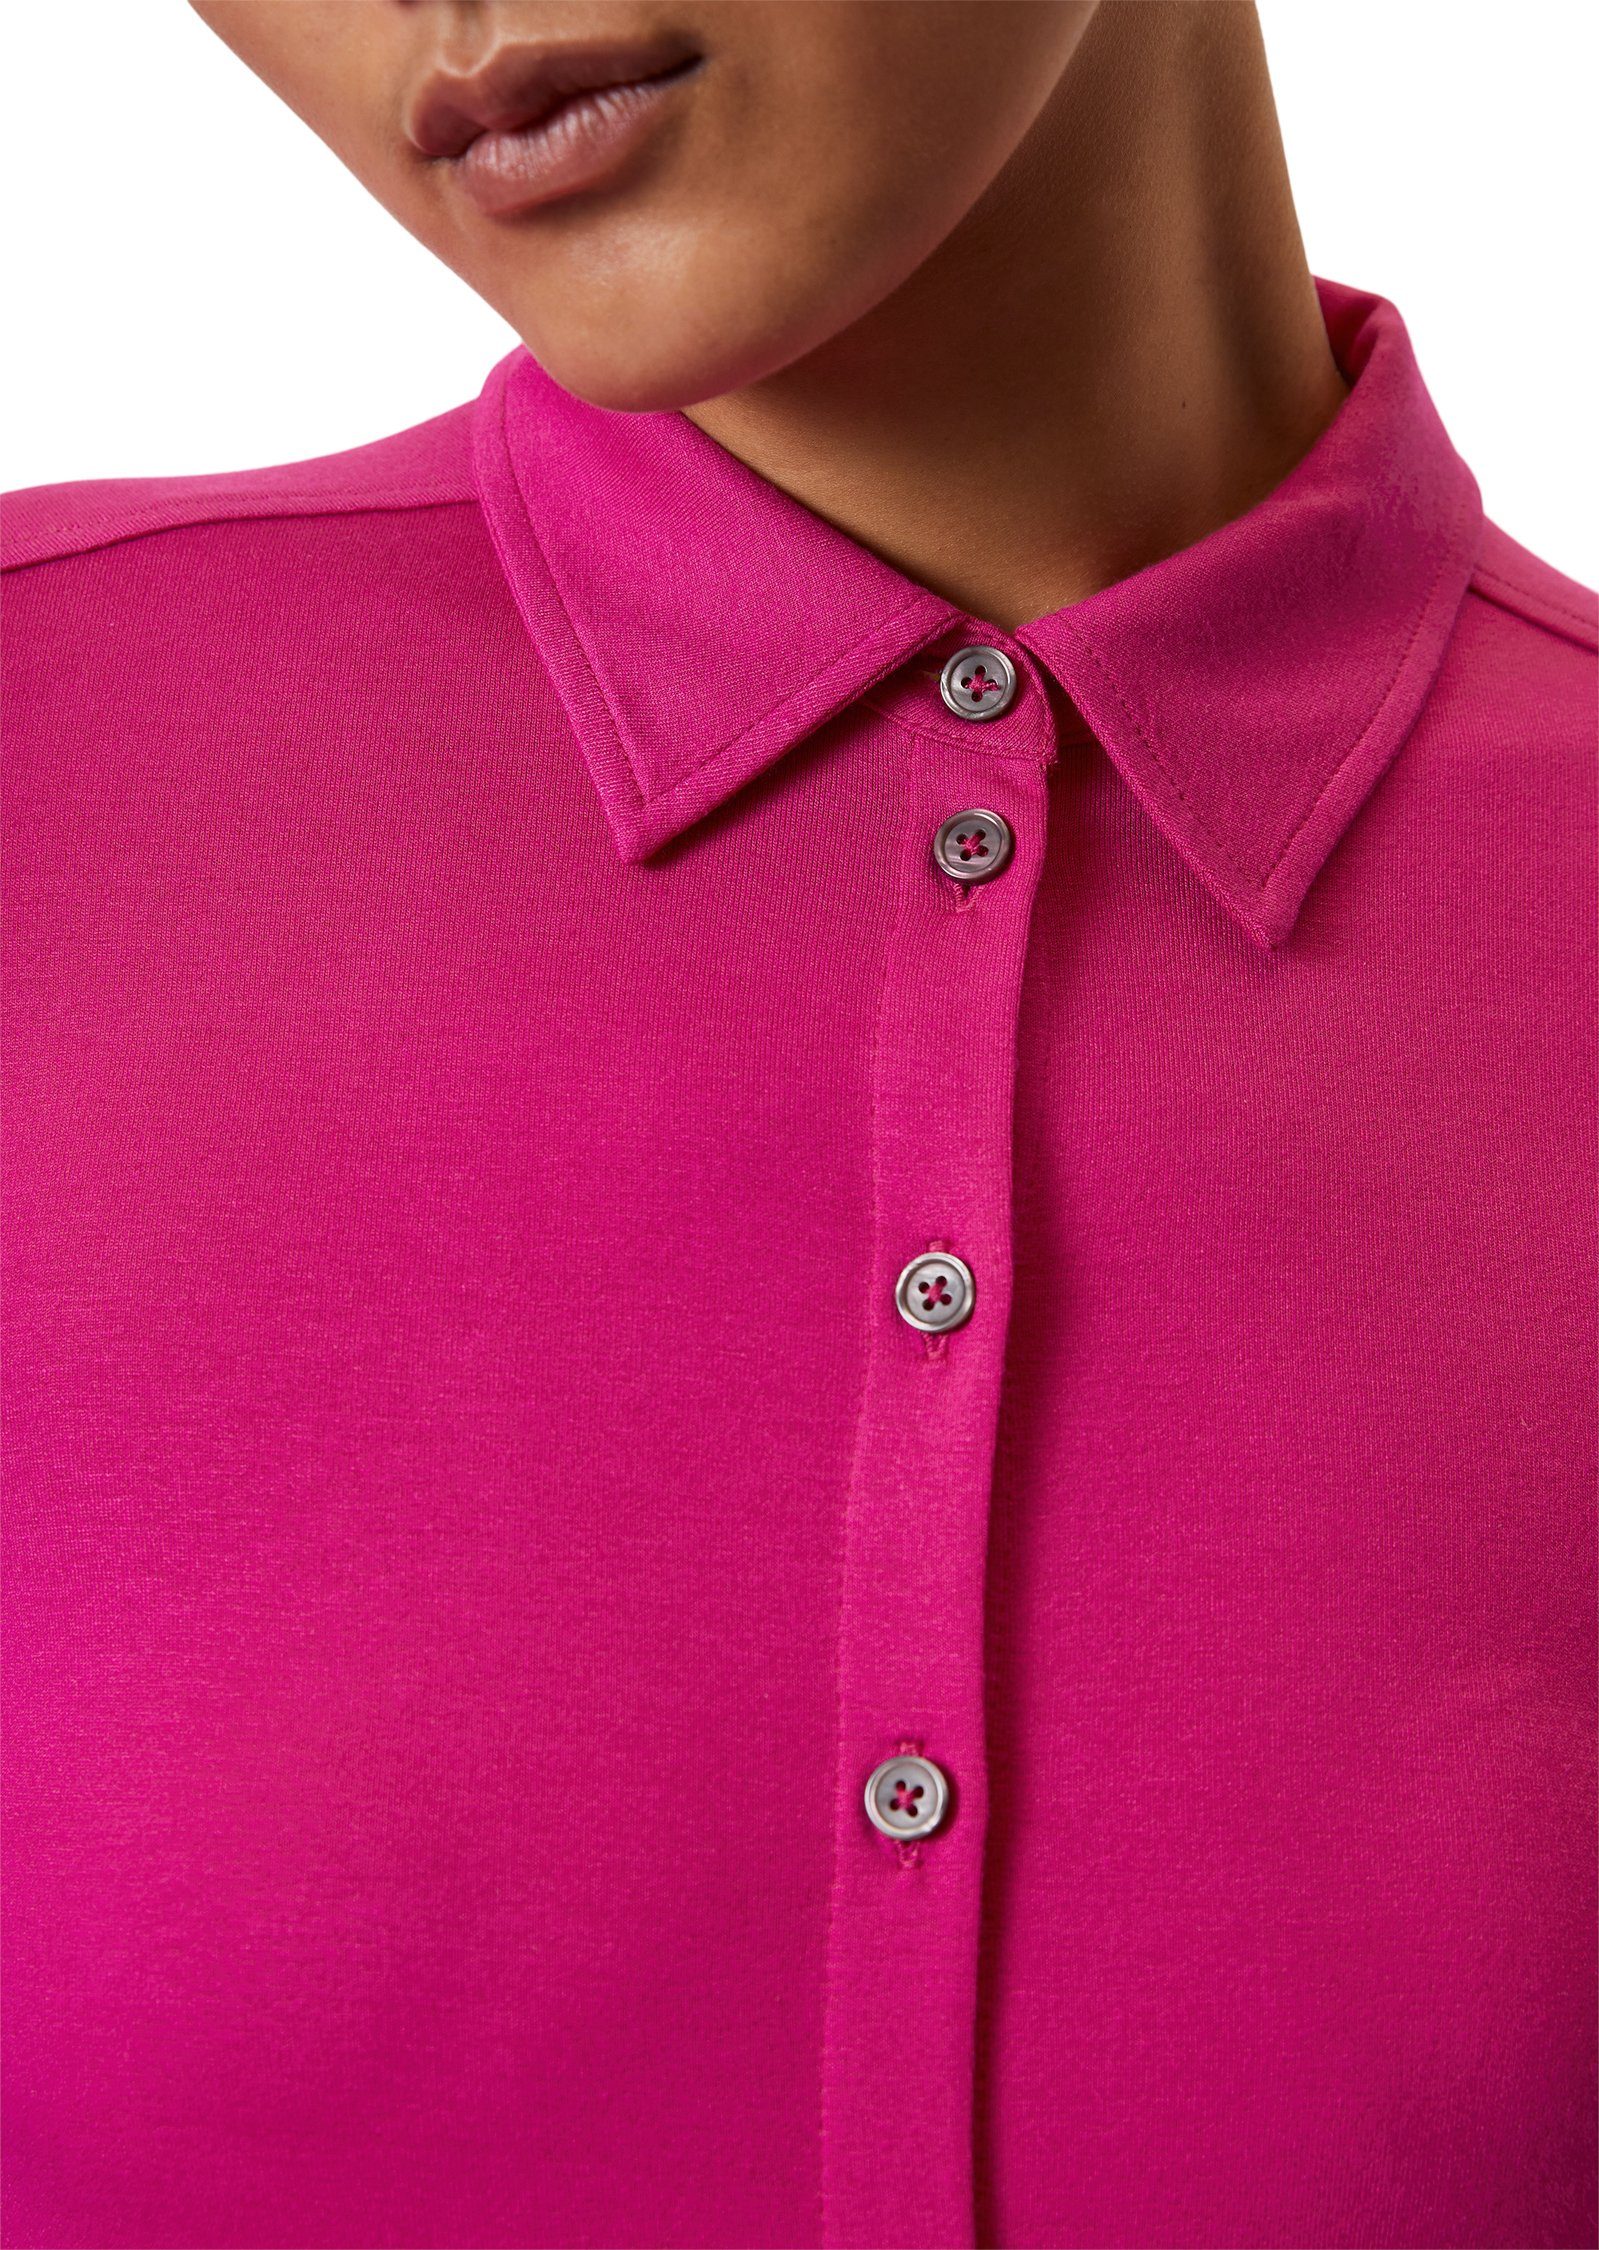 Schnitt Blusenshirt im hüftlangen O'Polo vibrant pink Marc